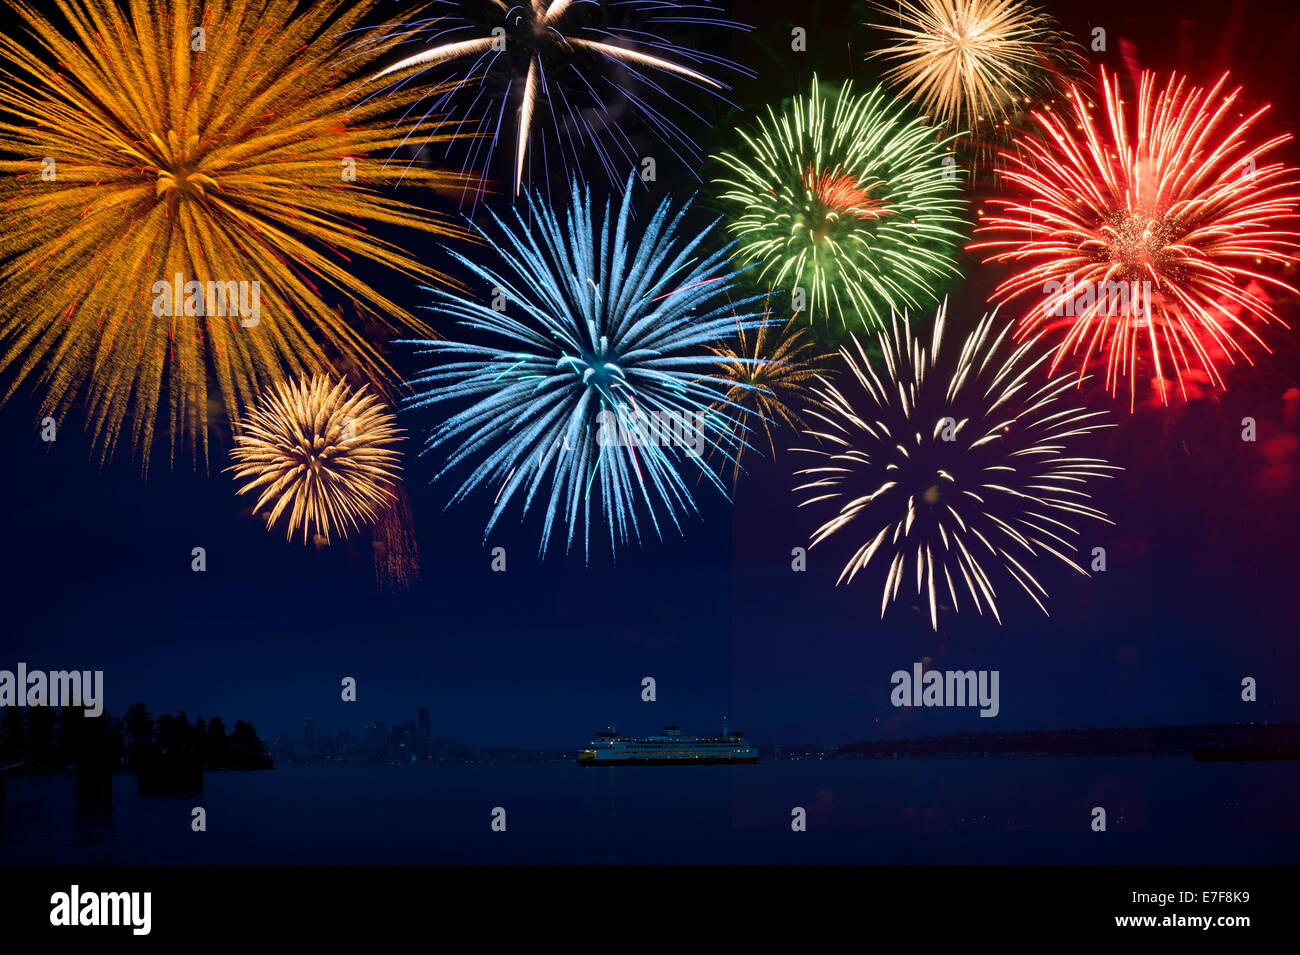 Fireworks exploding over cruise ship in bay, Seattle, Washington, United States Stock Photo